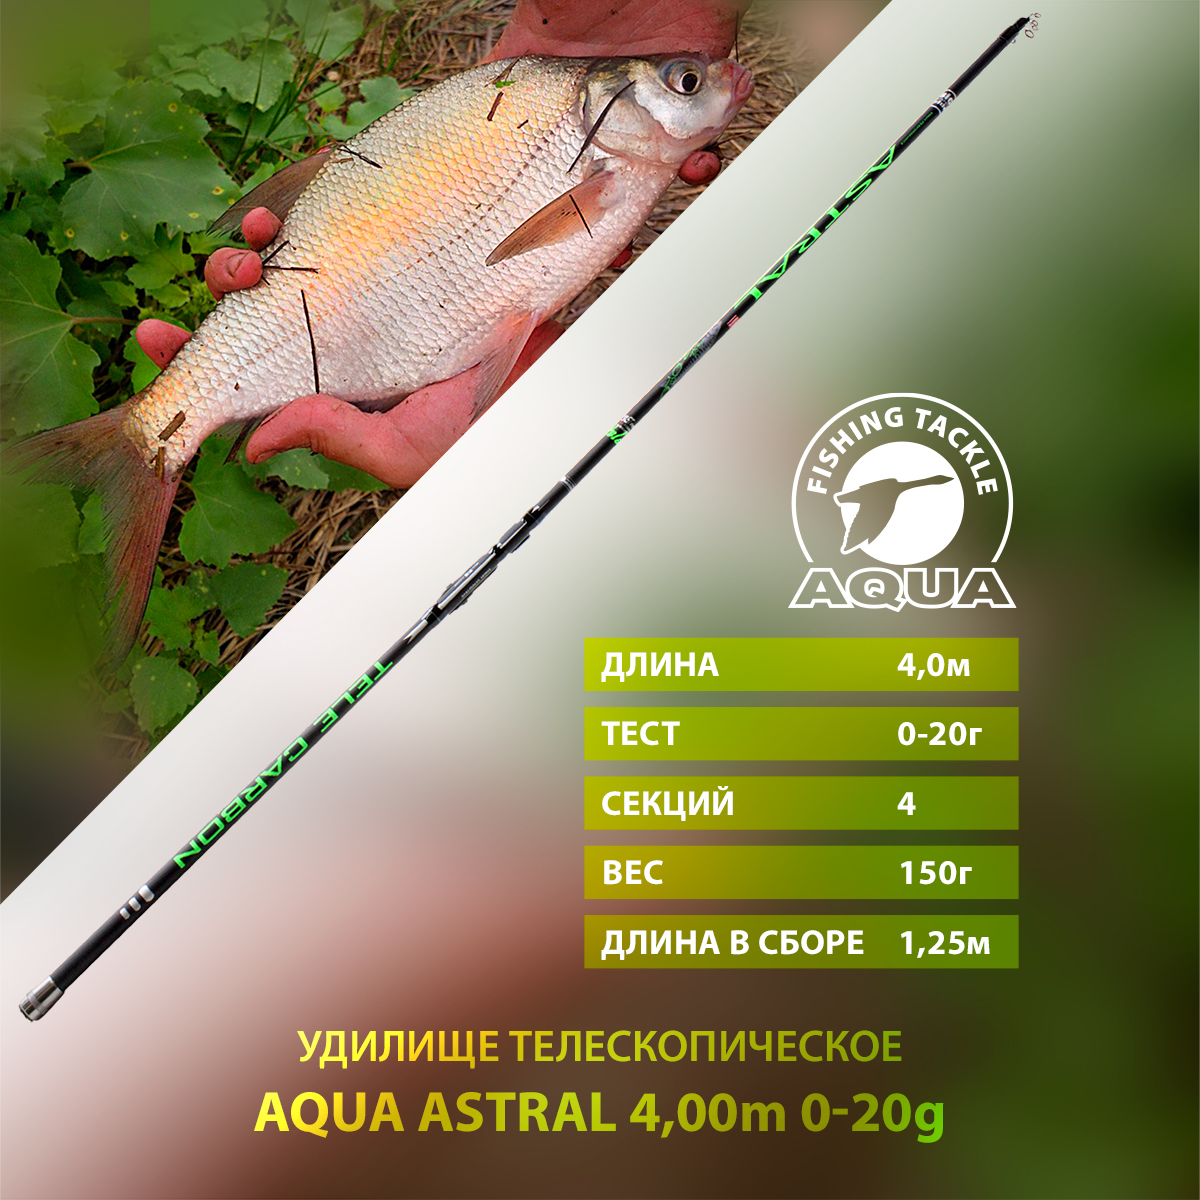 Удилище телескопическое для рыбалки AQUA ASTRAL с кольцами 4,00m, 0-30g